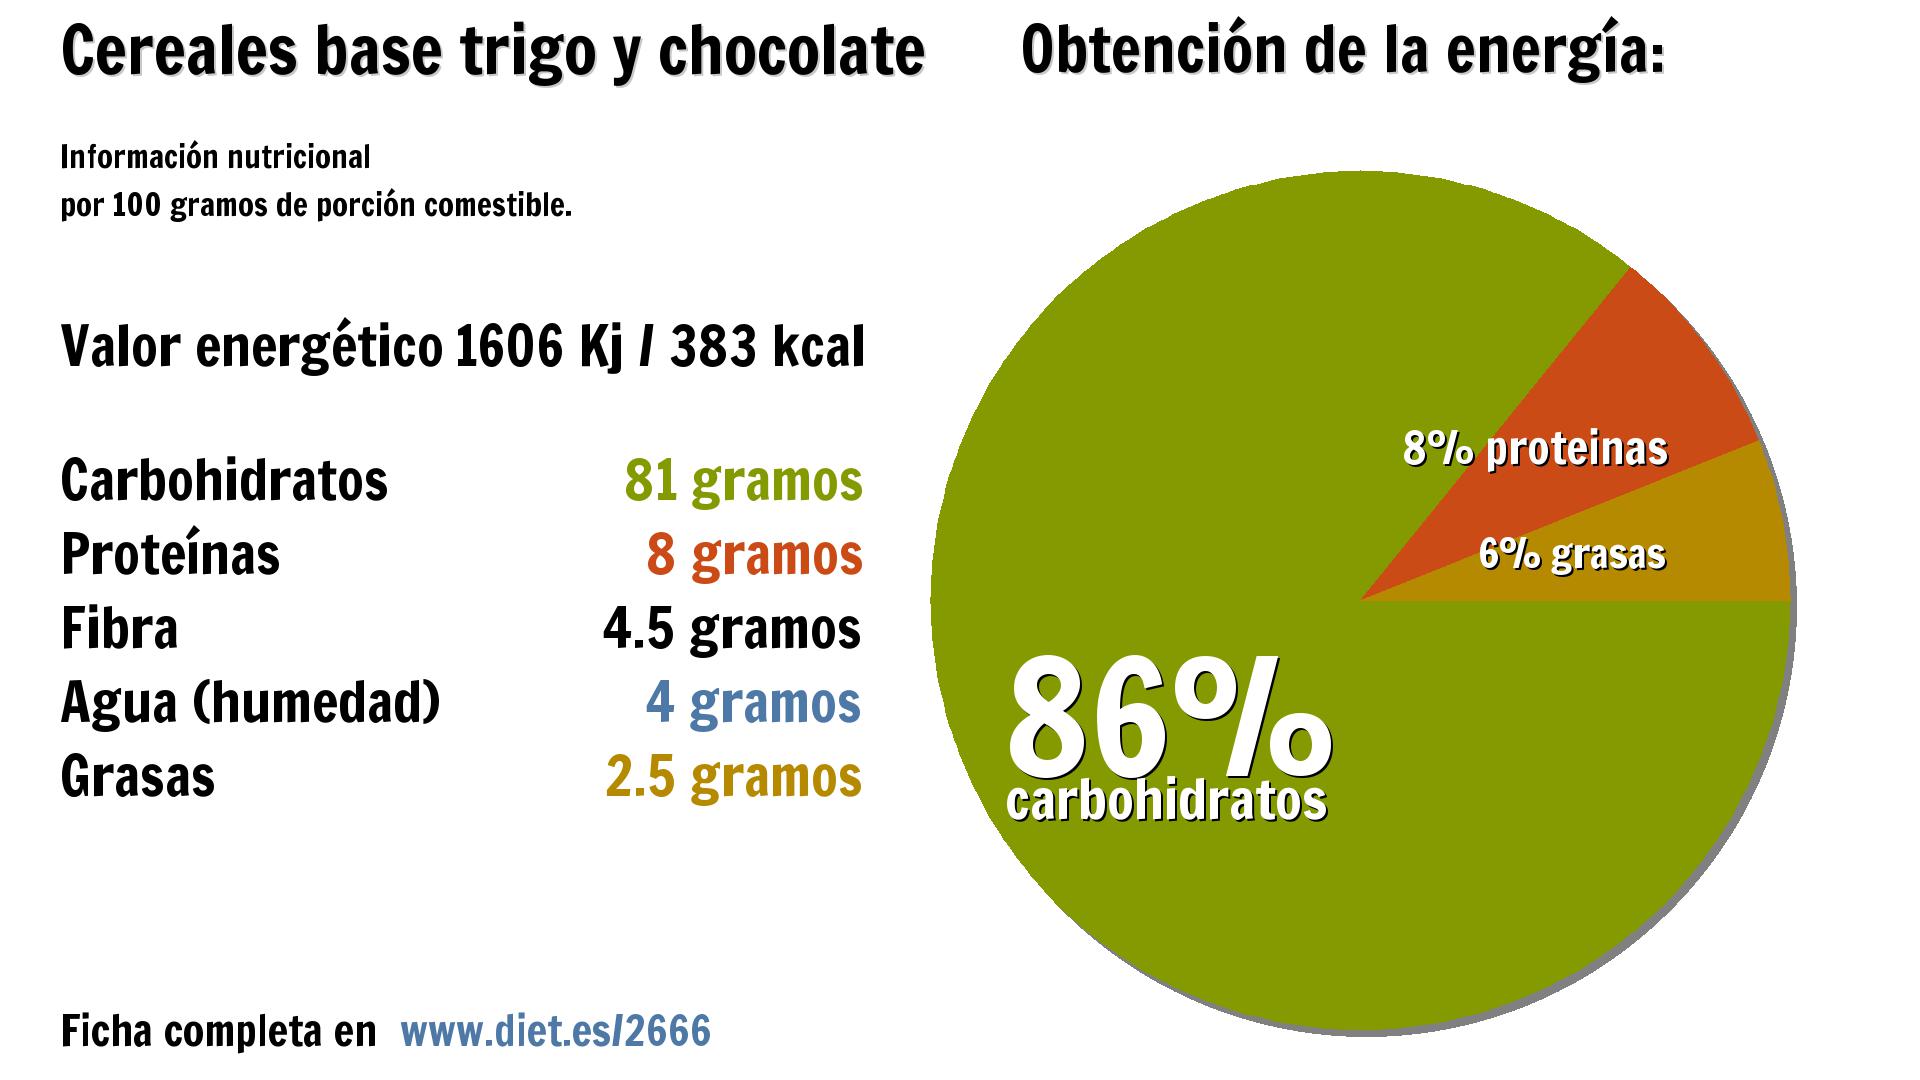 Cereales base trigo y chocolate: energía 1606 Kj, carbohidratos 81 g., proteínas 8 g., fibra 5 g., agua 4 g. y grasas 3 g.